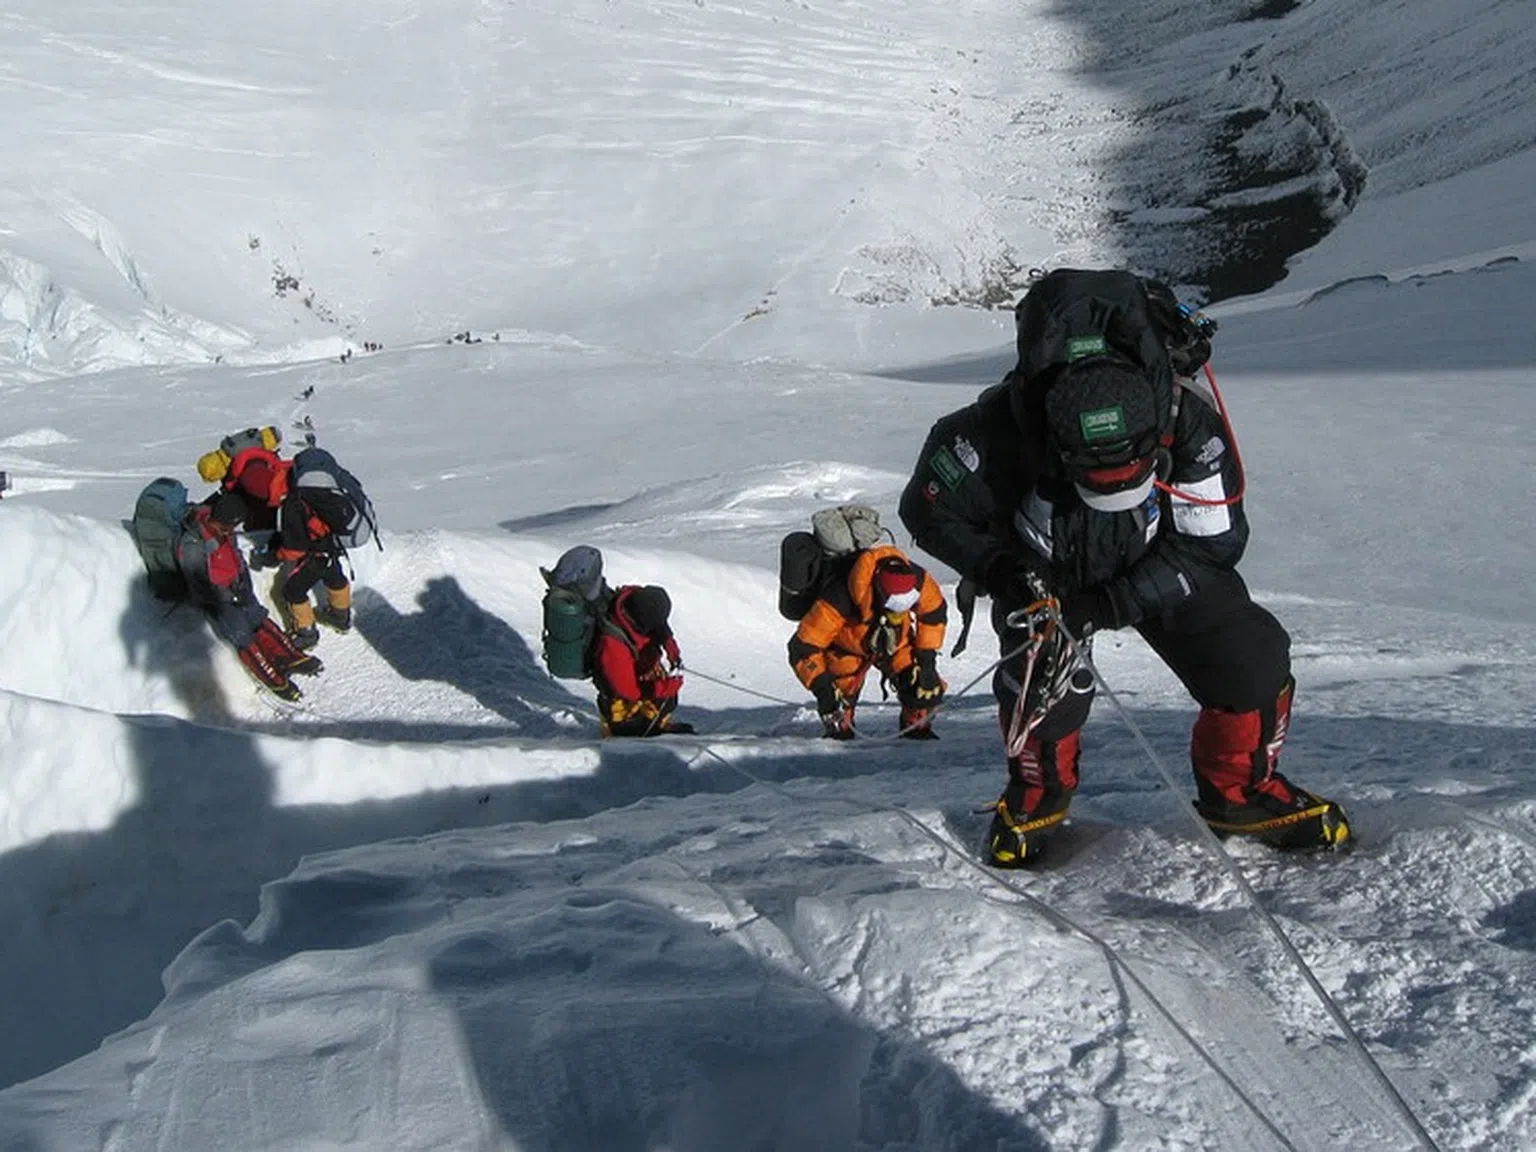 9 българи, издъхнали в ледената прегръдка на Хималаите, с които се гордеем